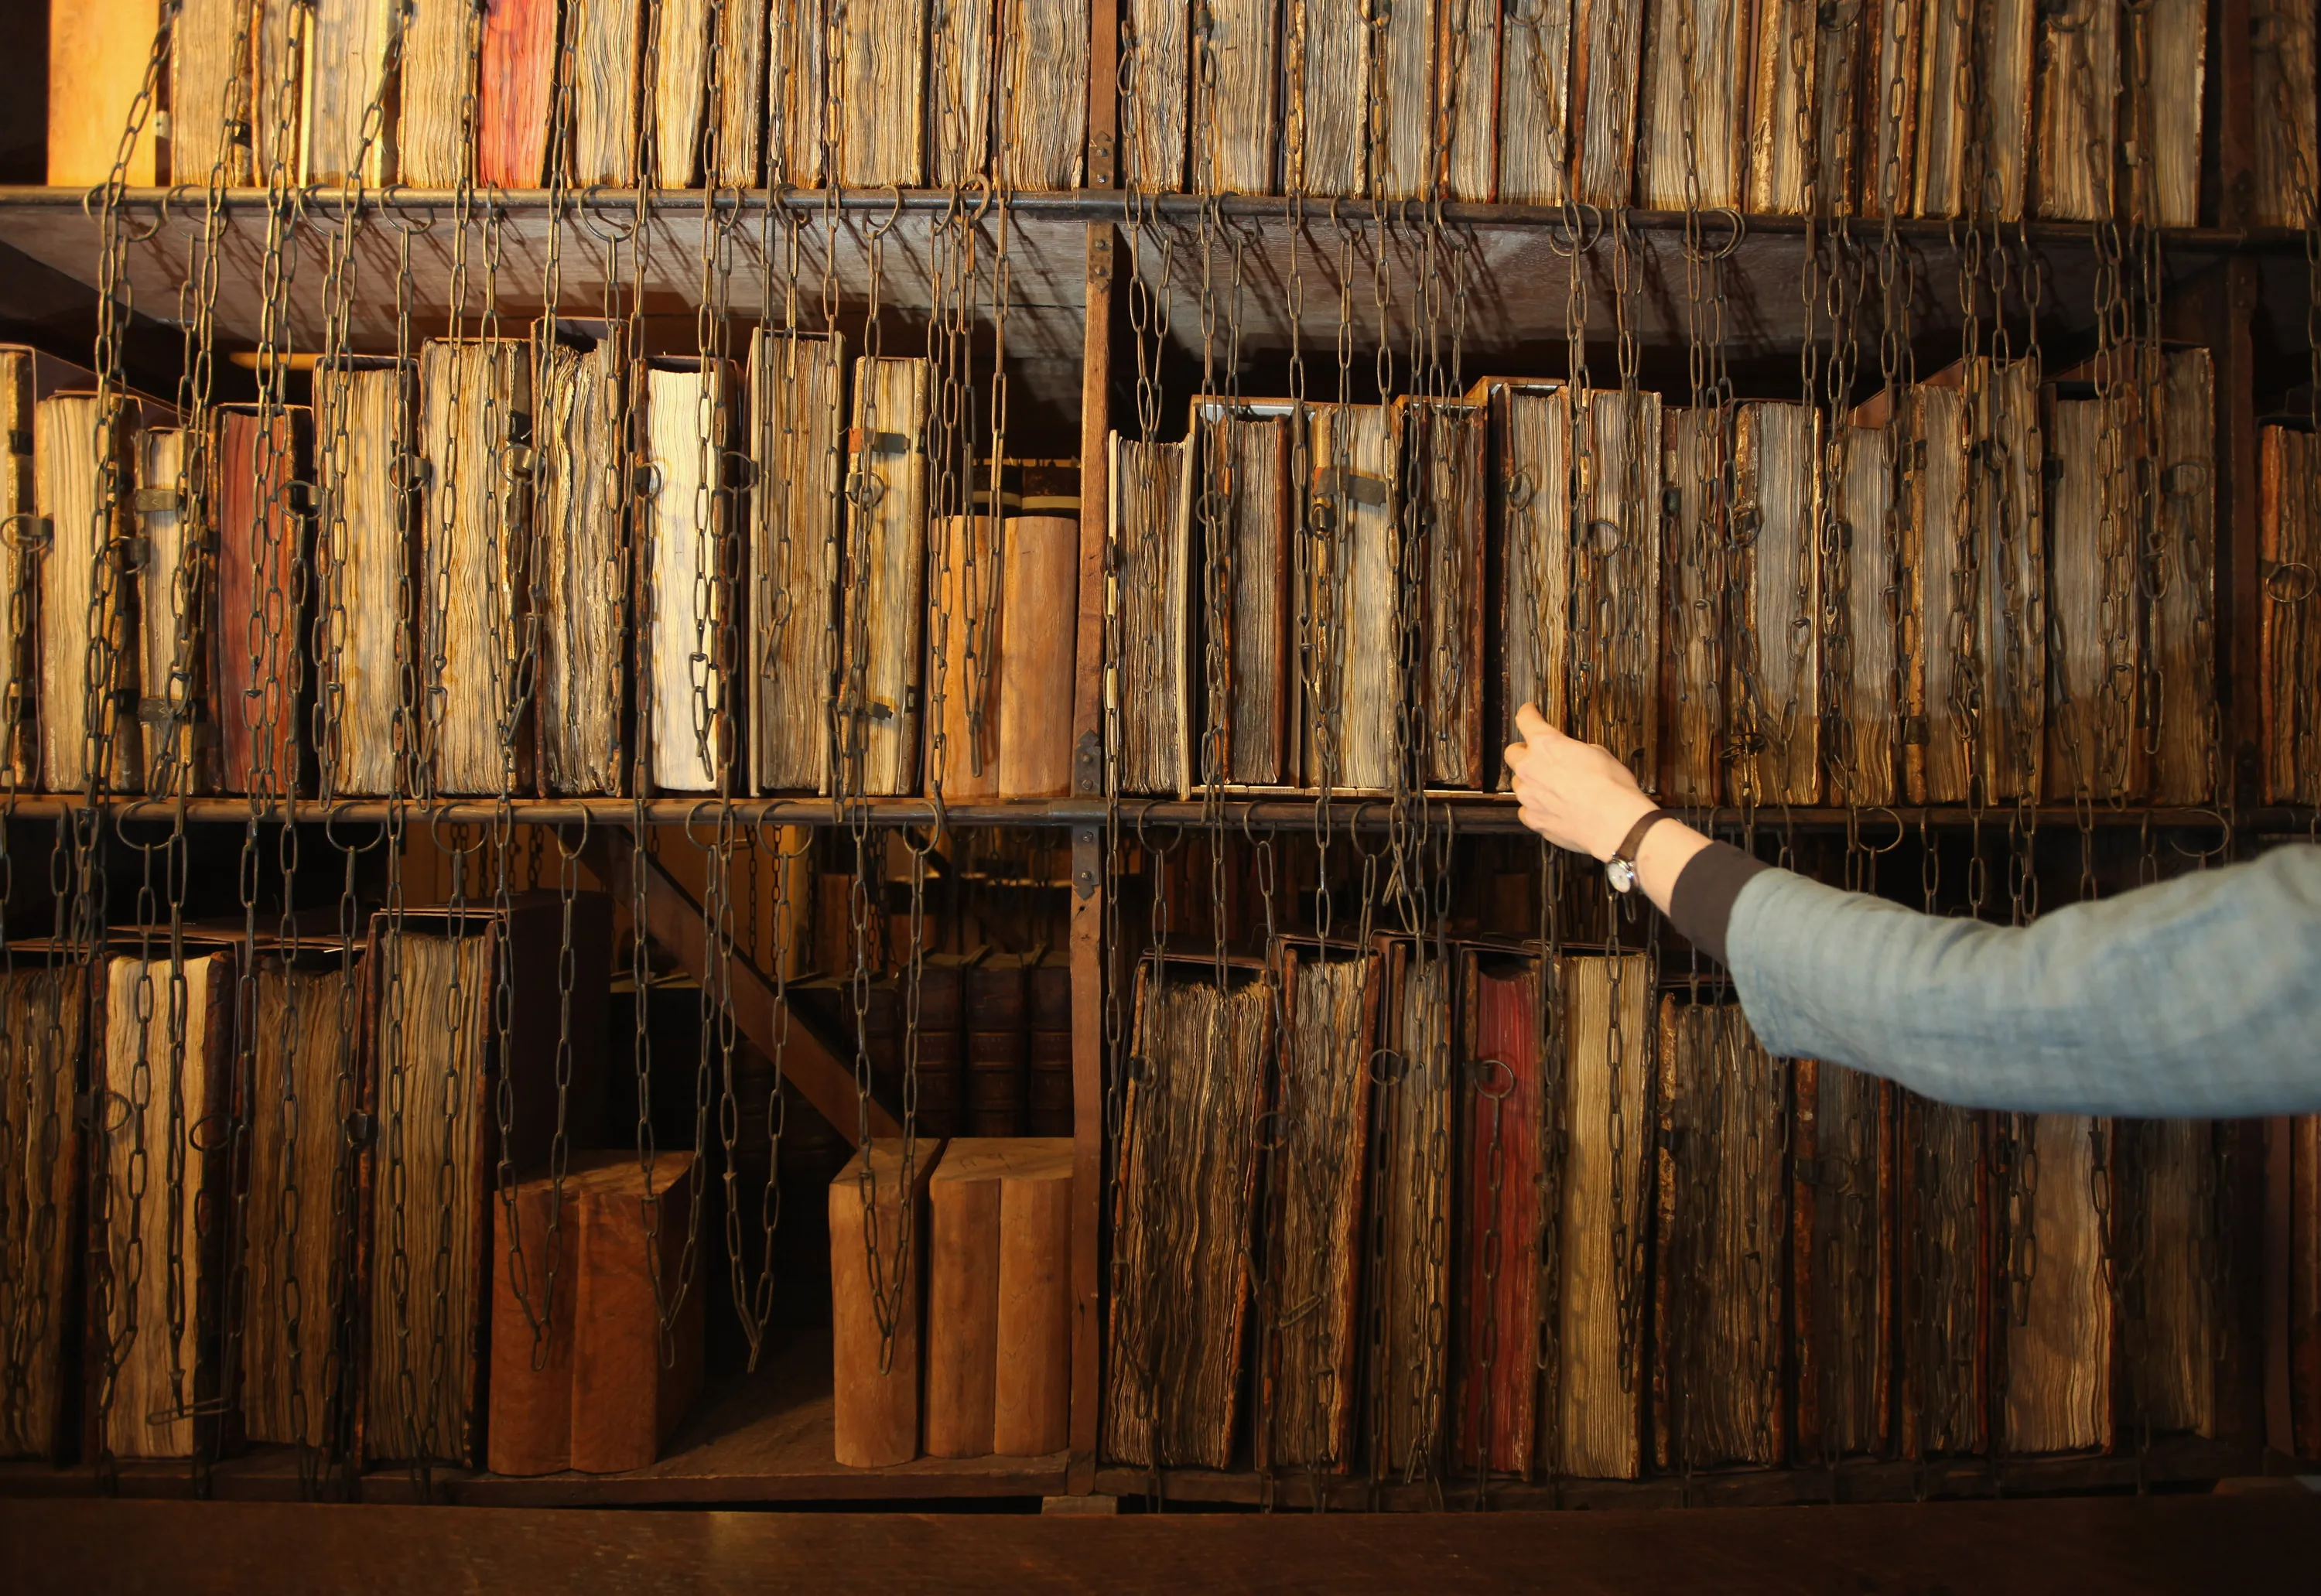 Архив есть в библиотеки. Цепная библиотека в Херефорде. Старинная библиотека. Полки с книгами в библиотеке. Библиотека в древности.